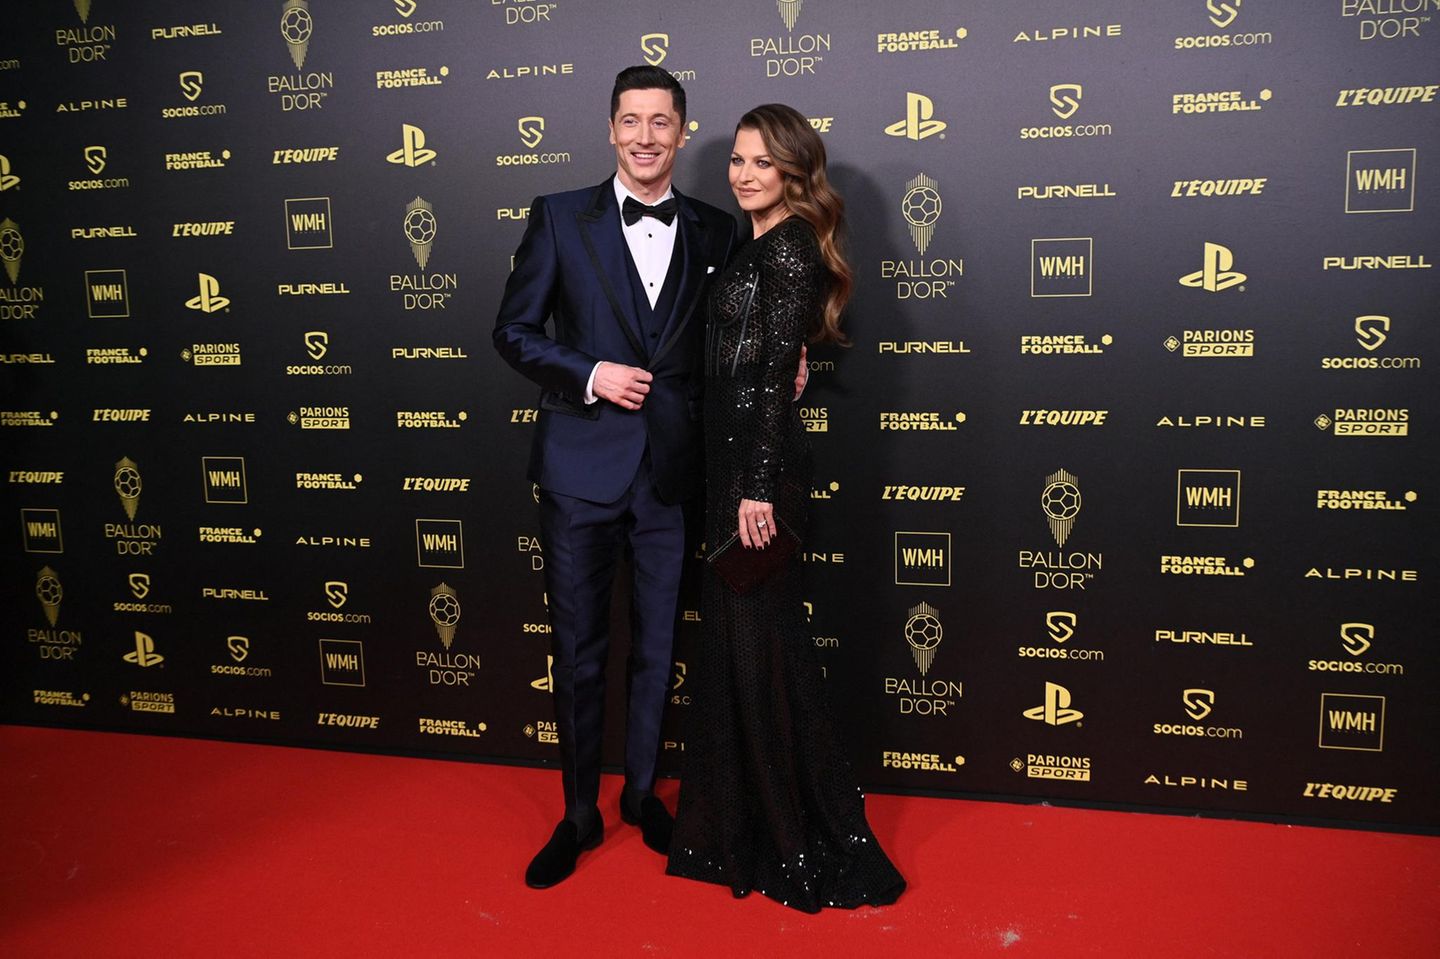 Robert und Anna Lewandowski genießen das Rampenlicht auf dem Red Carpet der "Ballon D'Or"-Preisverleihung. Das Ehepaar scheint sich in ihren glamourösen Outfits sichtlich wohl zu fühlen.